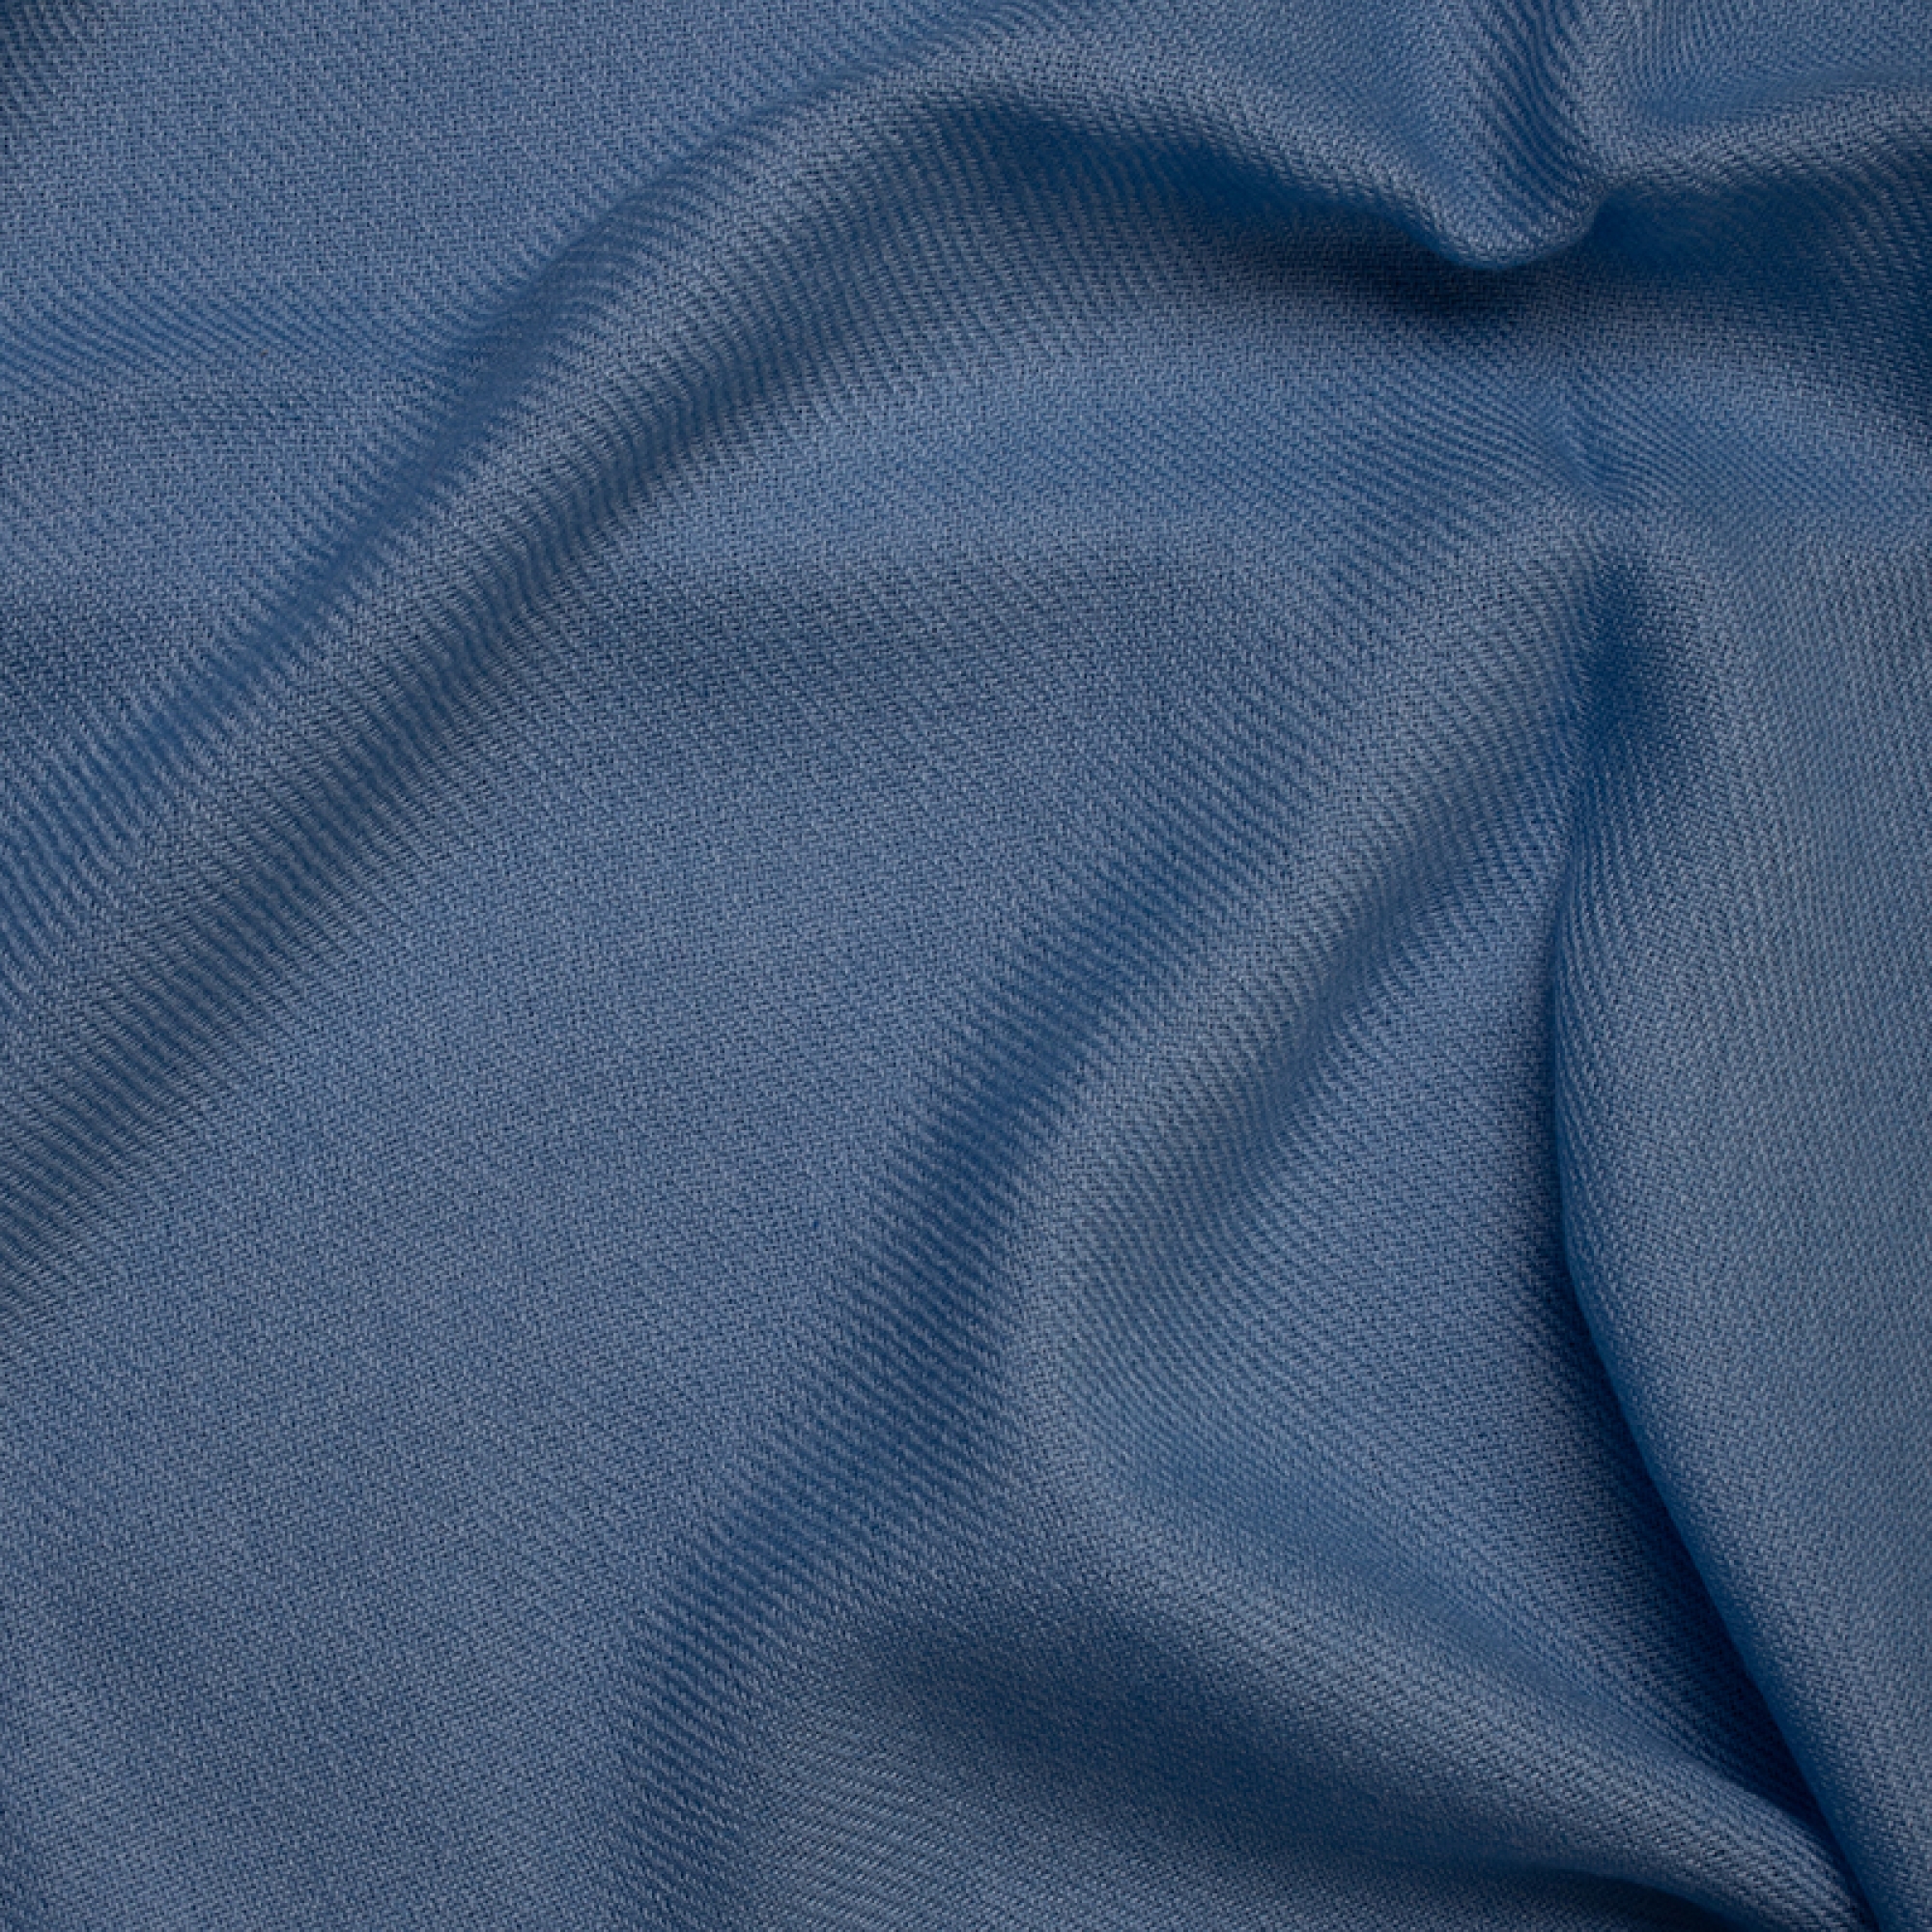 Cachemire accessoires couvertures plaids toodoo plain l 220 x 220 bleu celeste 220x220cm